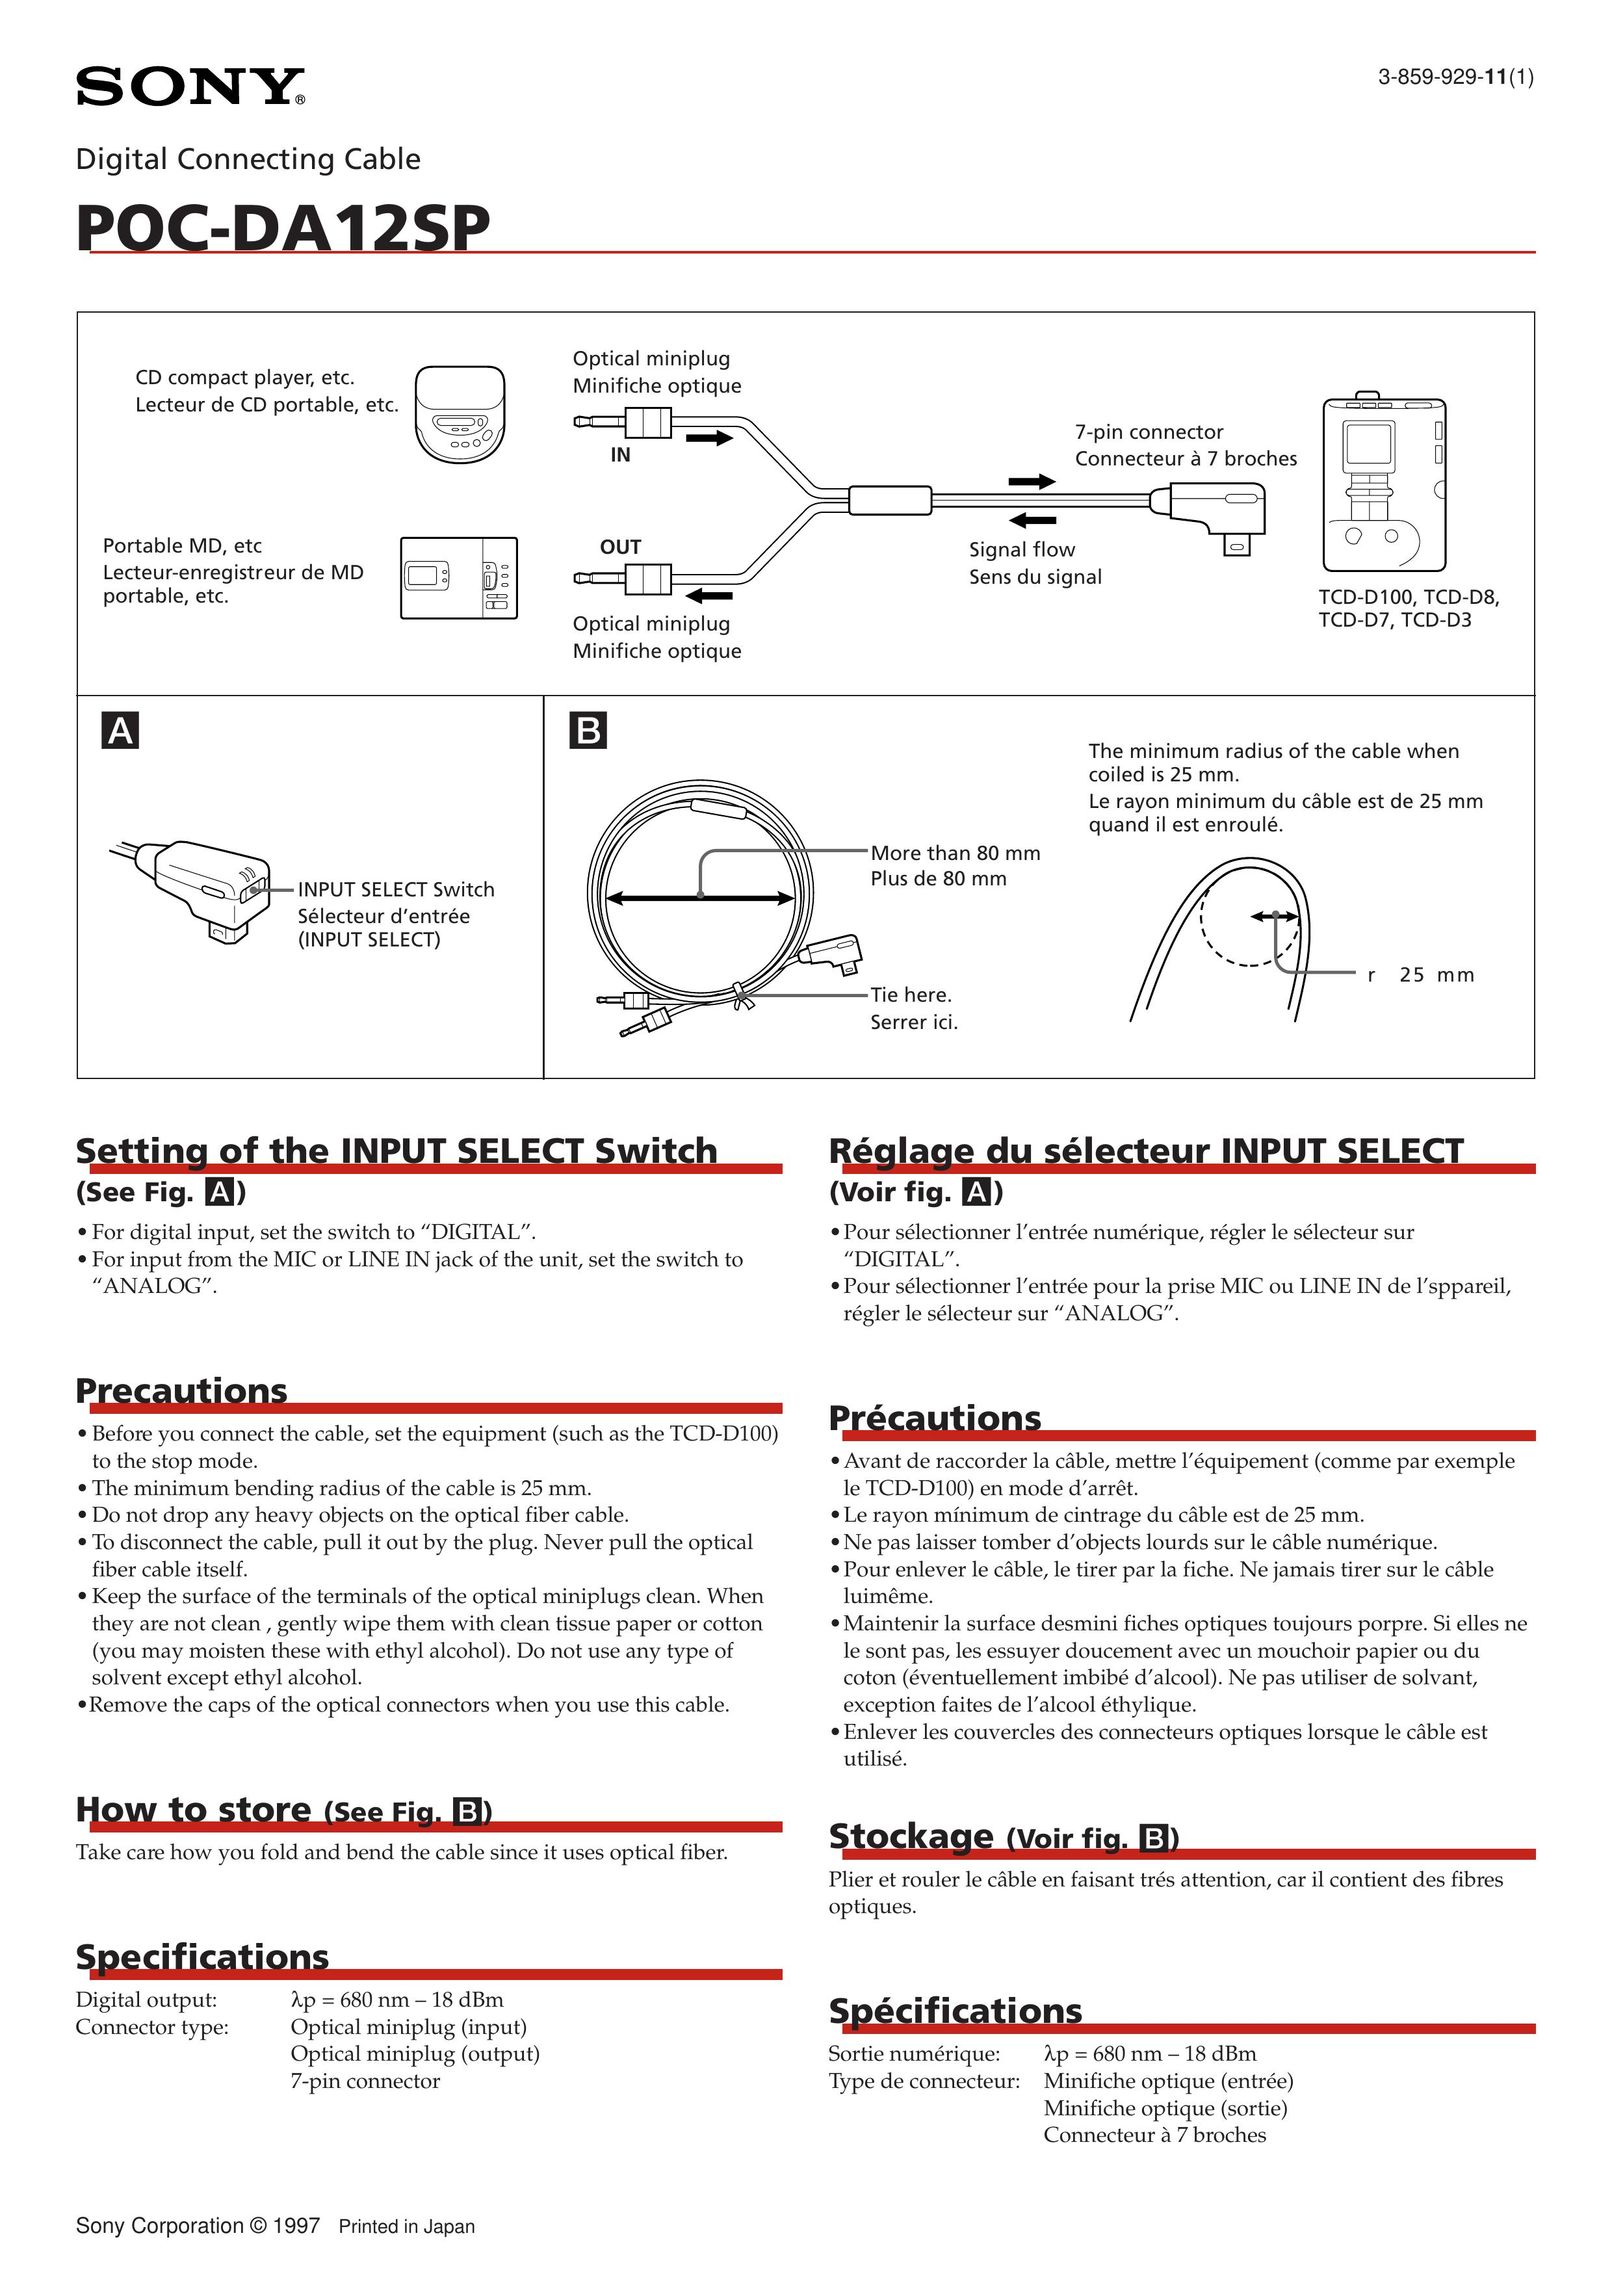 Sony POC-DA12SP Cable Box User Manual